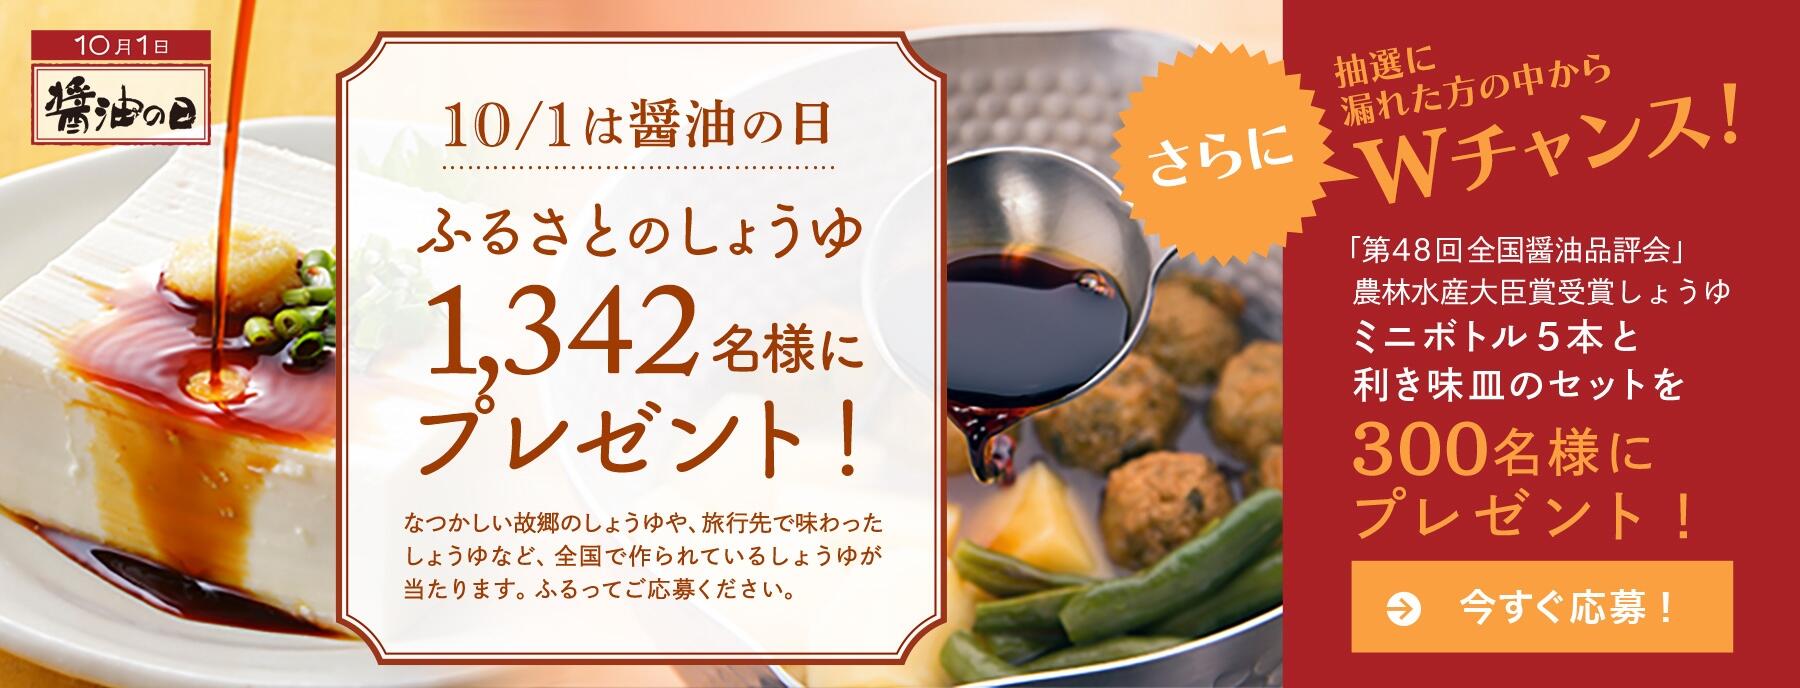 ニッポンの味の基本「醤油」。全国選りすぐりの5本から知る醤油の世界 | 【公式】dancyu (ダンチュウ)